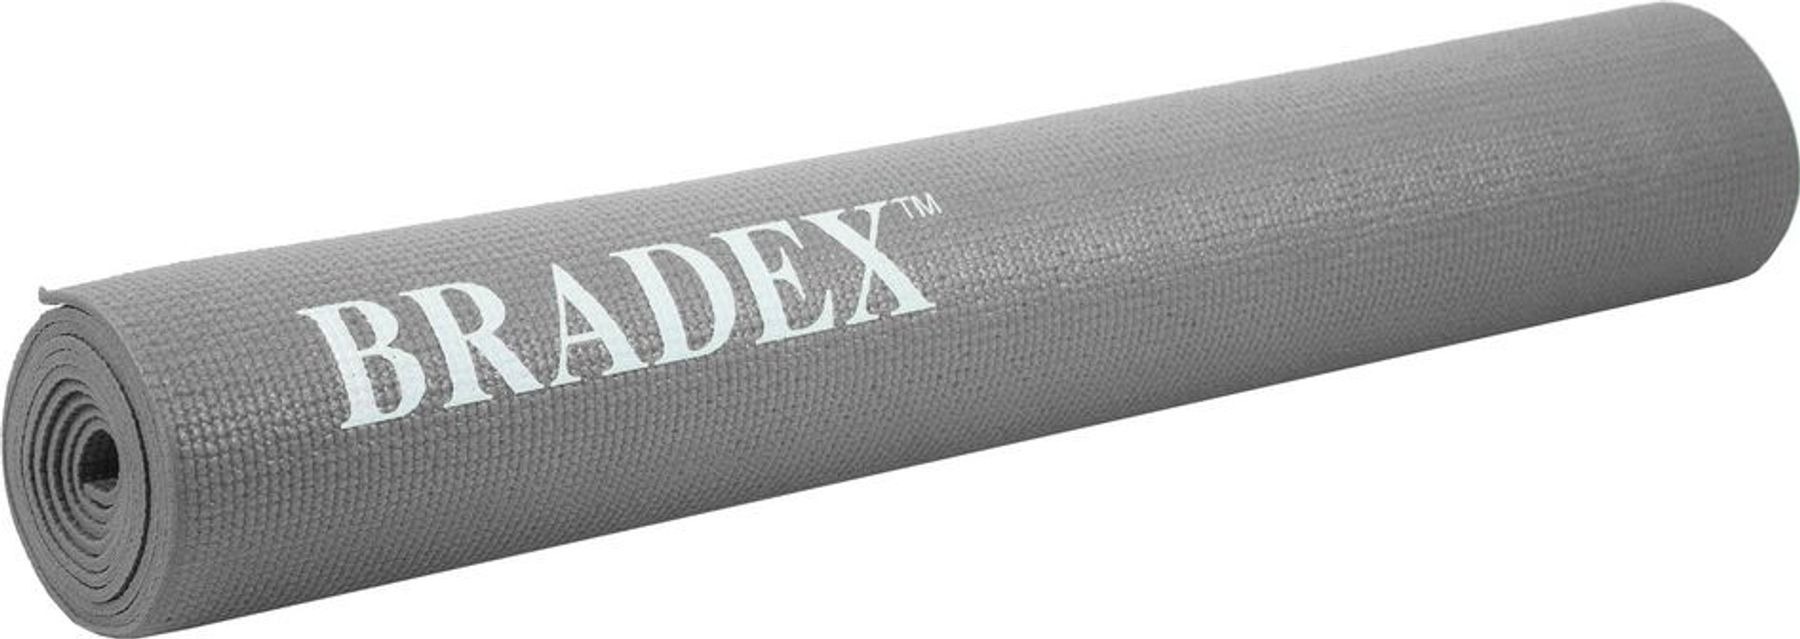 фото Коврик для йоги и фитнеса bradex sf 0686, 190*61*0,5 см, серый